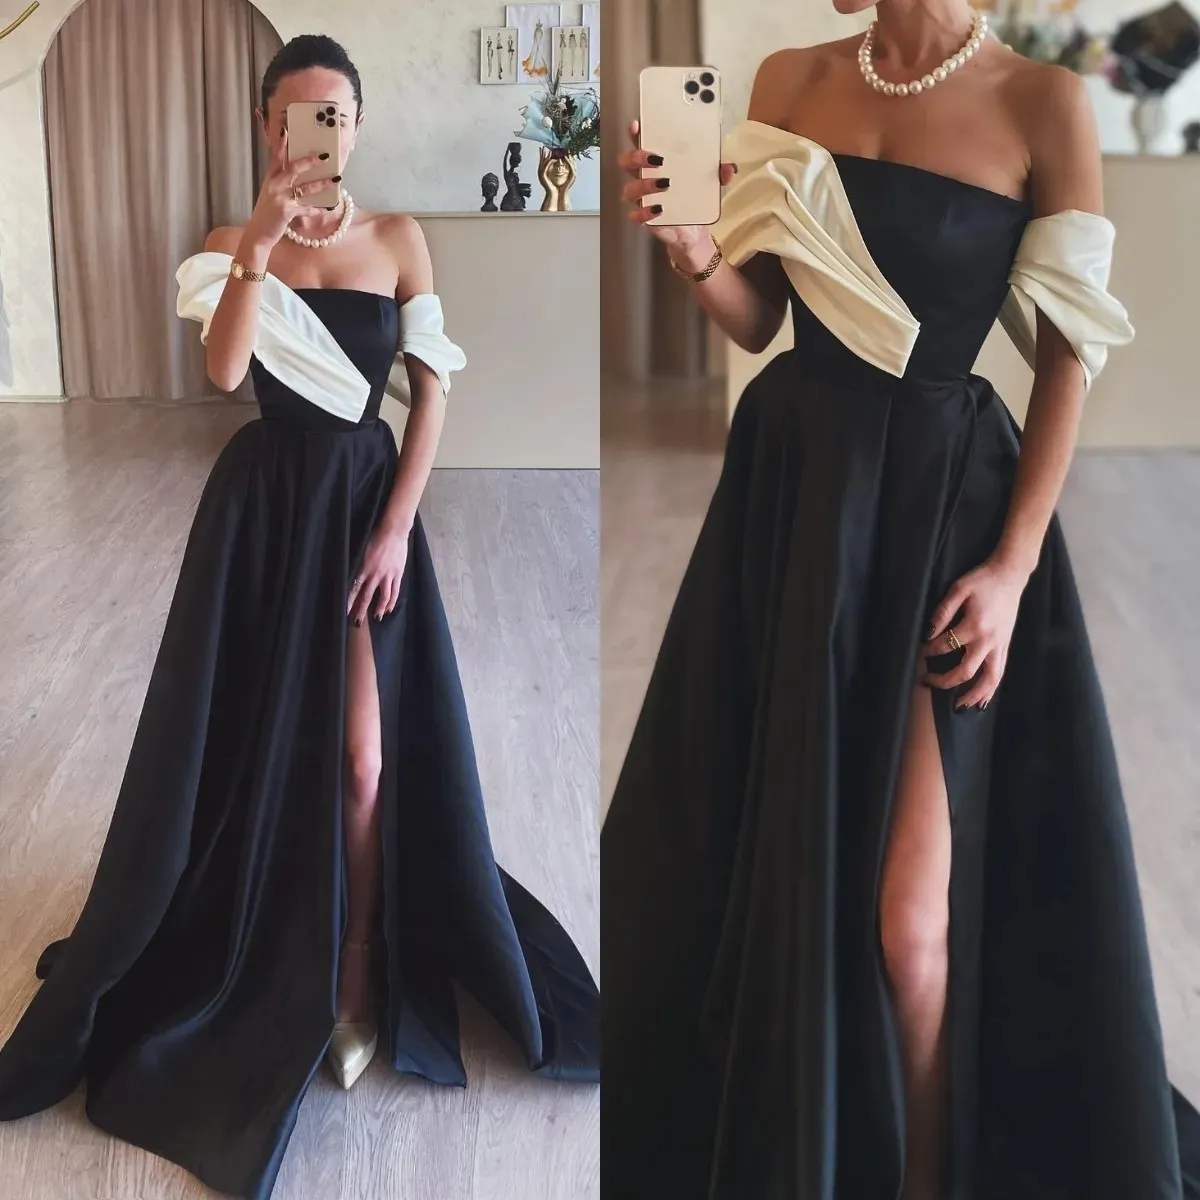 Elegant black white prom dress off shoulder formal evening dresses elegant split party dresses for special occasions promdress